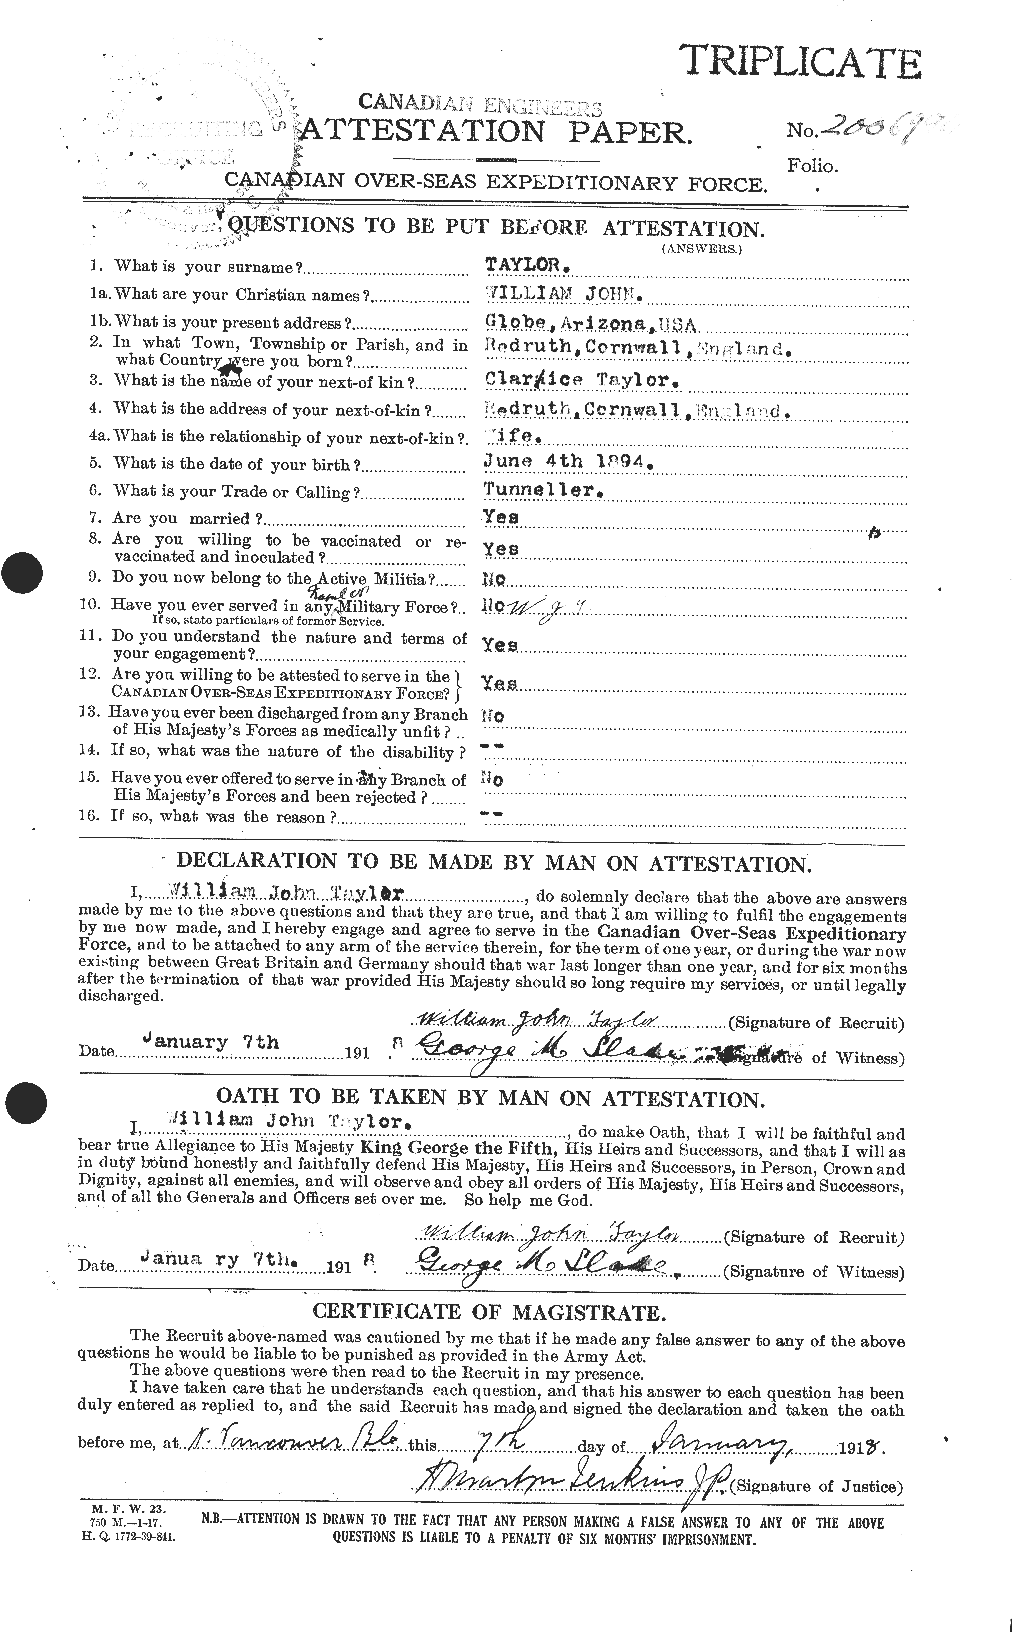 Dossiers du Personnel de la Première Guerre mondiale - CEC 628311a